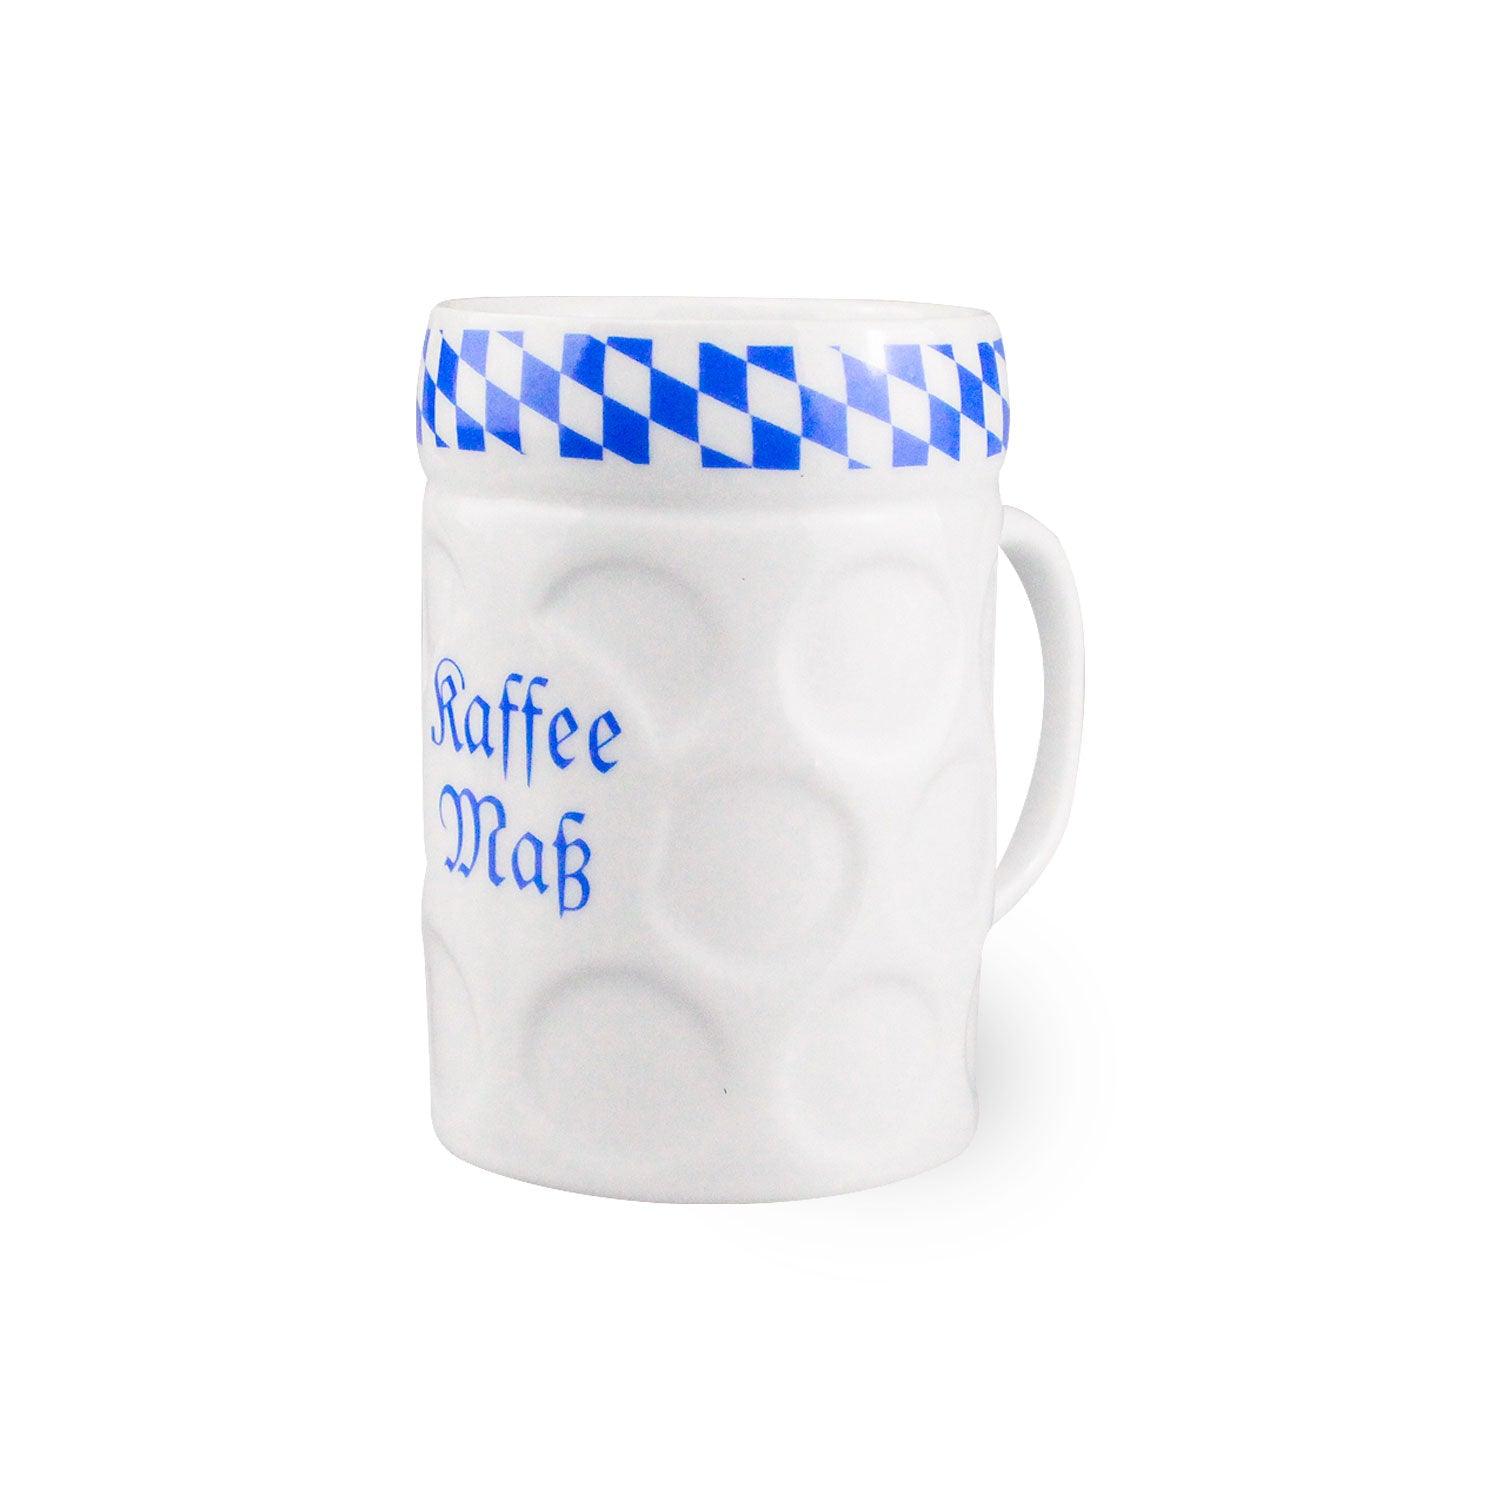 Tasse "Kaffee-Maß" - bavariashop - mei LebensGfui